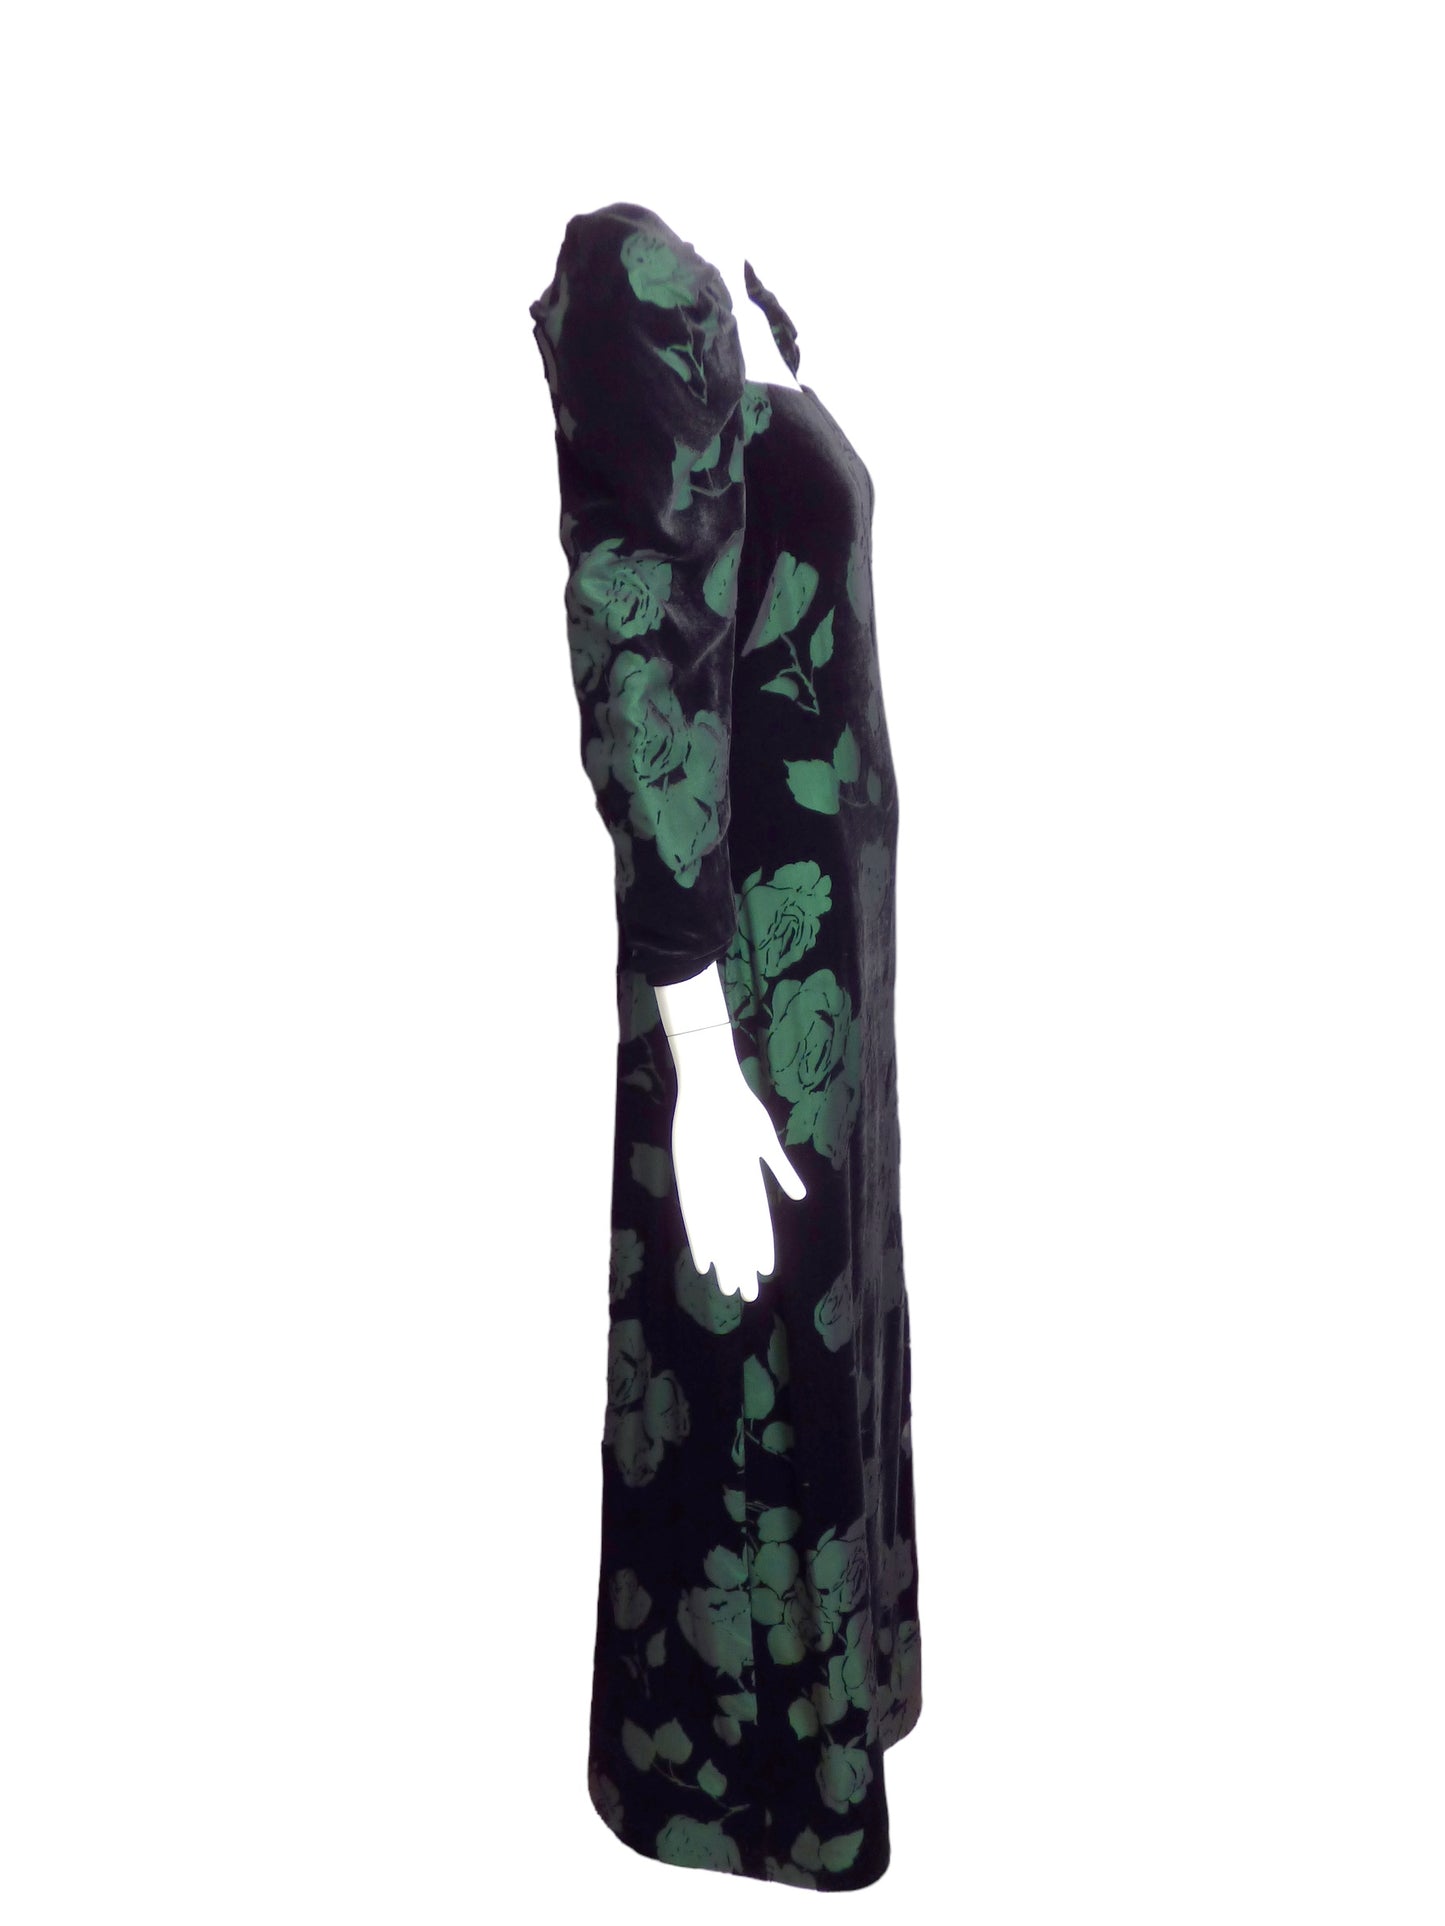 SCAASI- 1980s Voided Velvet Evening Dress, Size 6